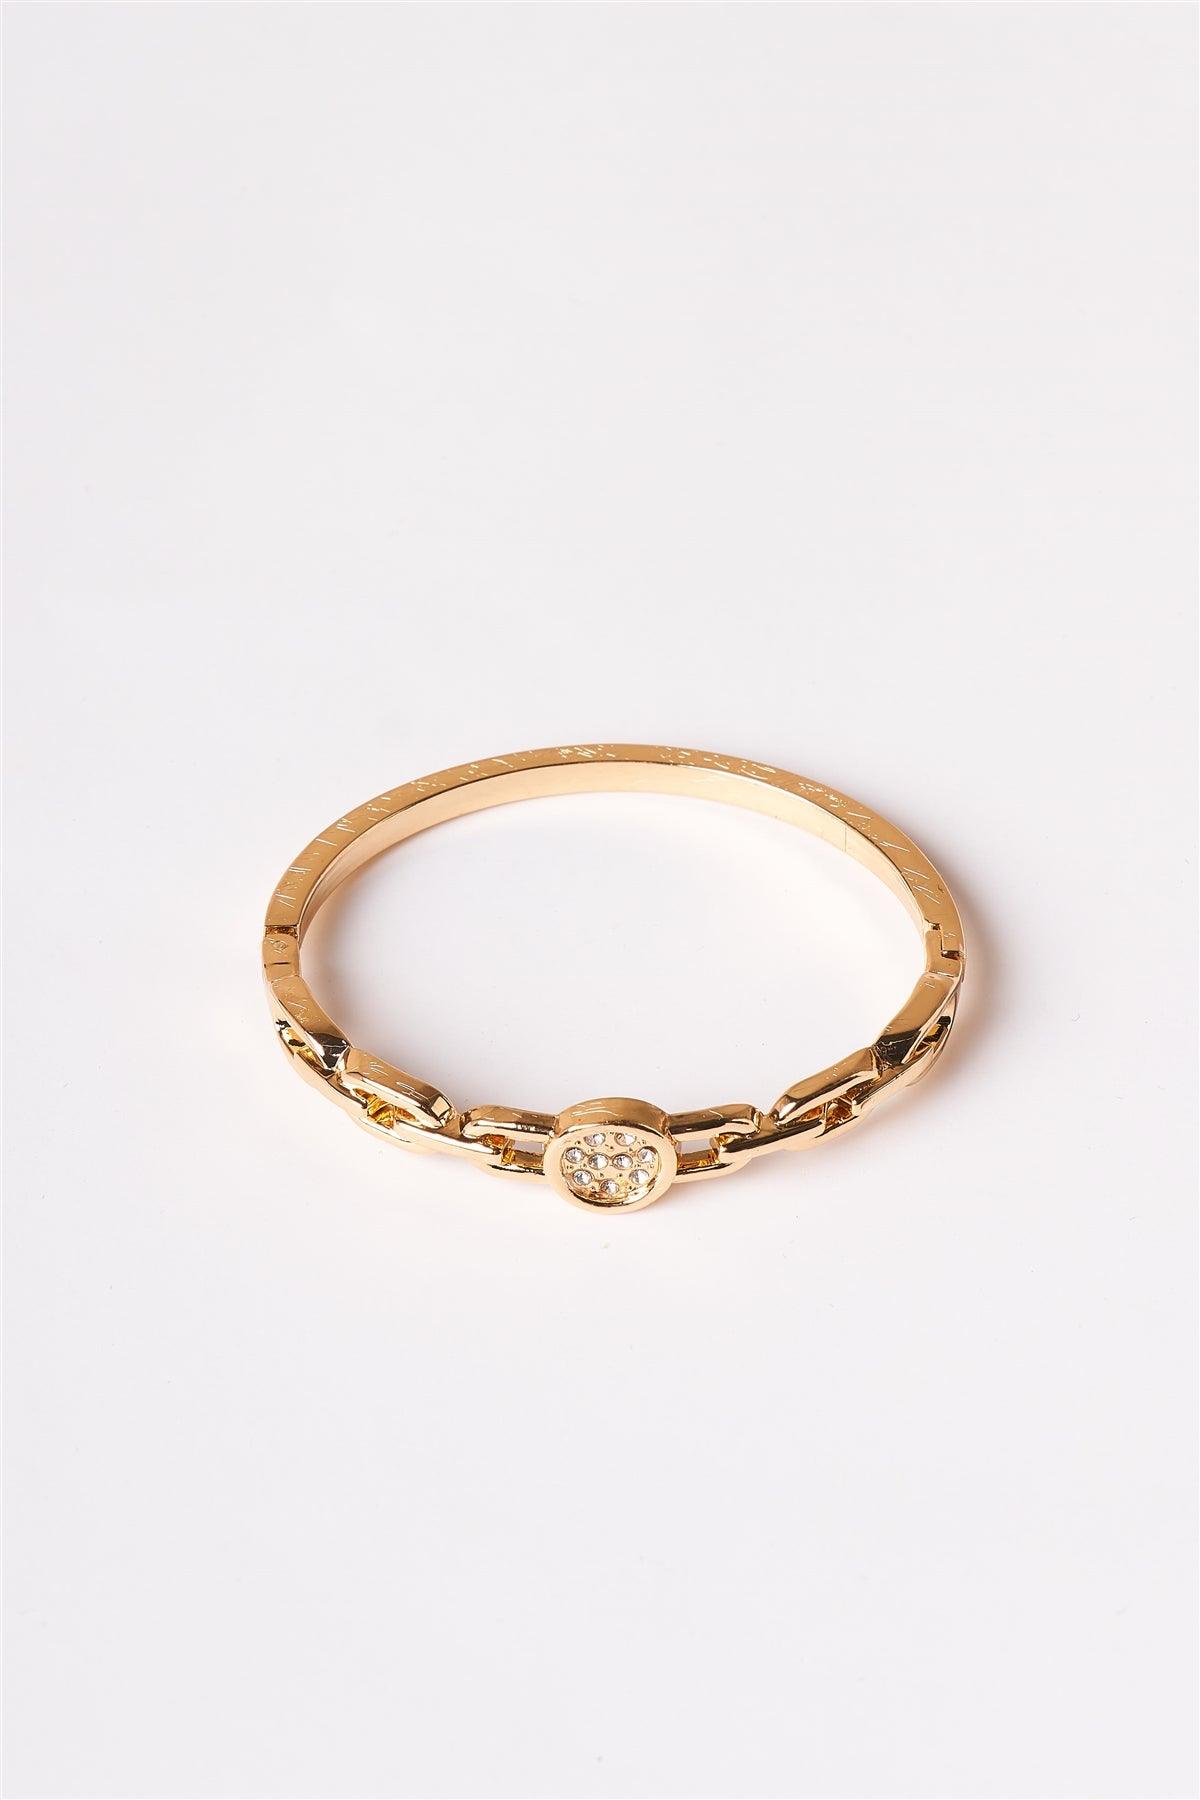 Gold Chain Bangle Clasp Bracelet /1 Piece